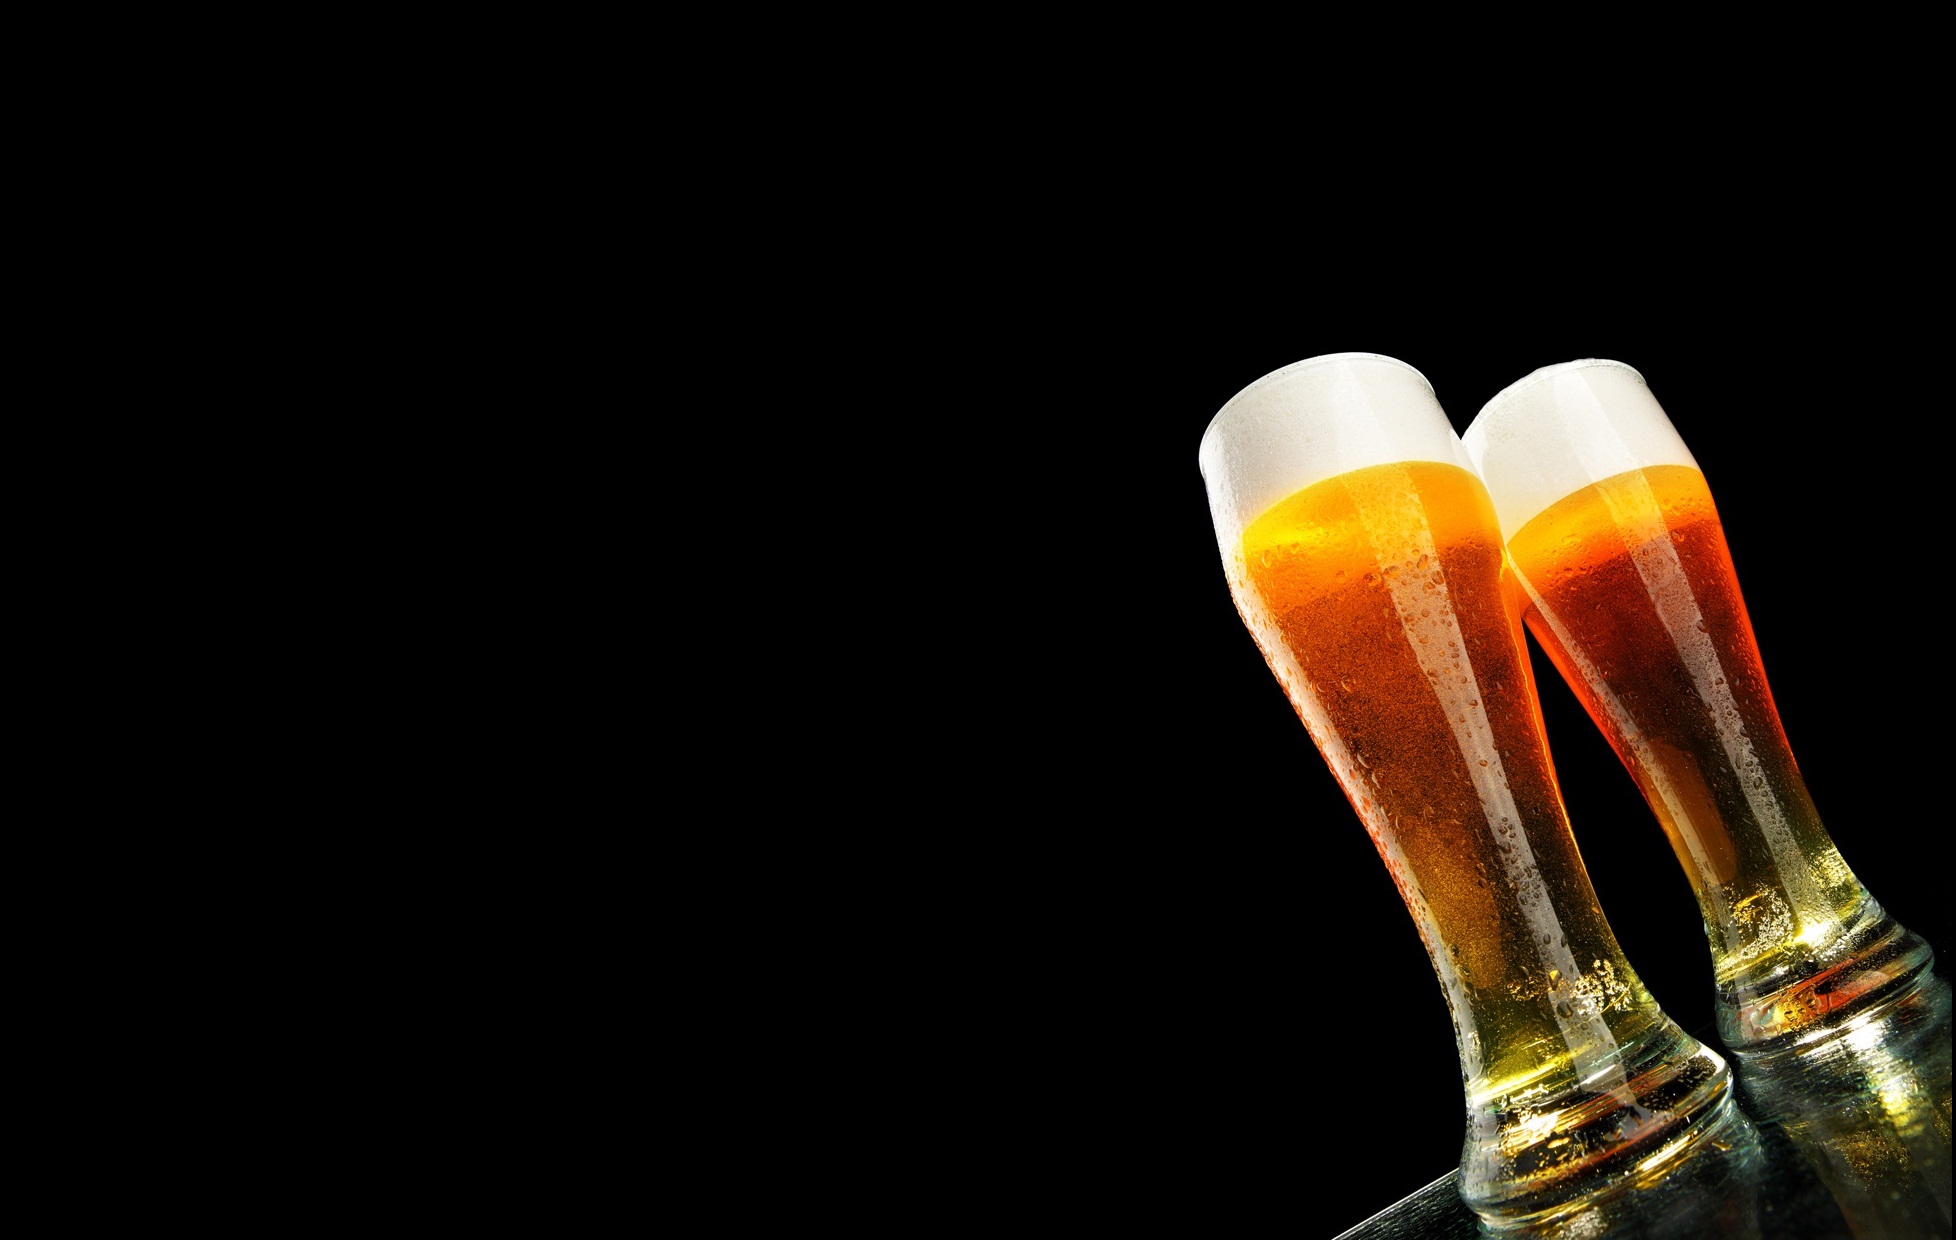 ビールの壁紙,ビールグラス,ビール,ドリンク,アルコール飲料,小麦ビール